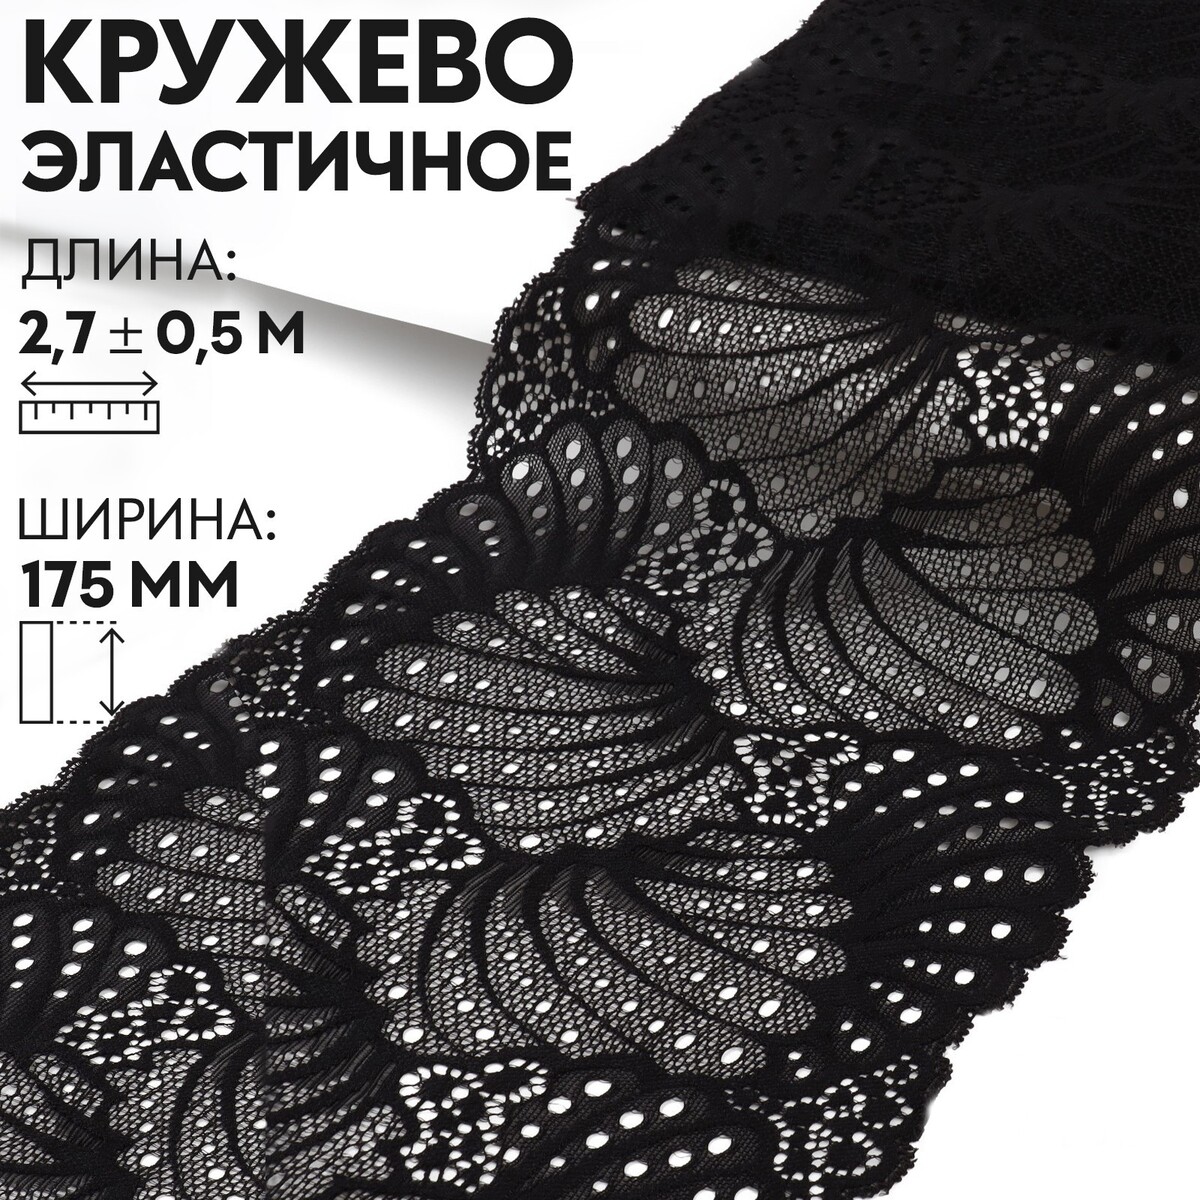 Кружевная эластичная ткань, 180 ± 5 мм × 2,7 ± 0,5 м, цвет черный